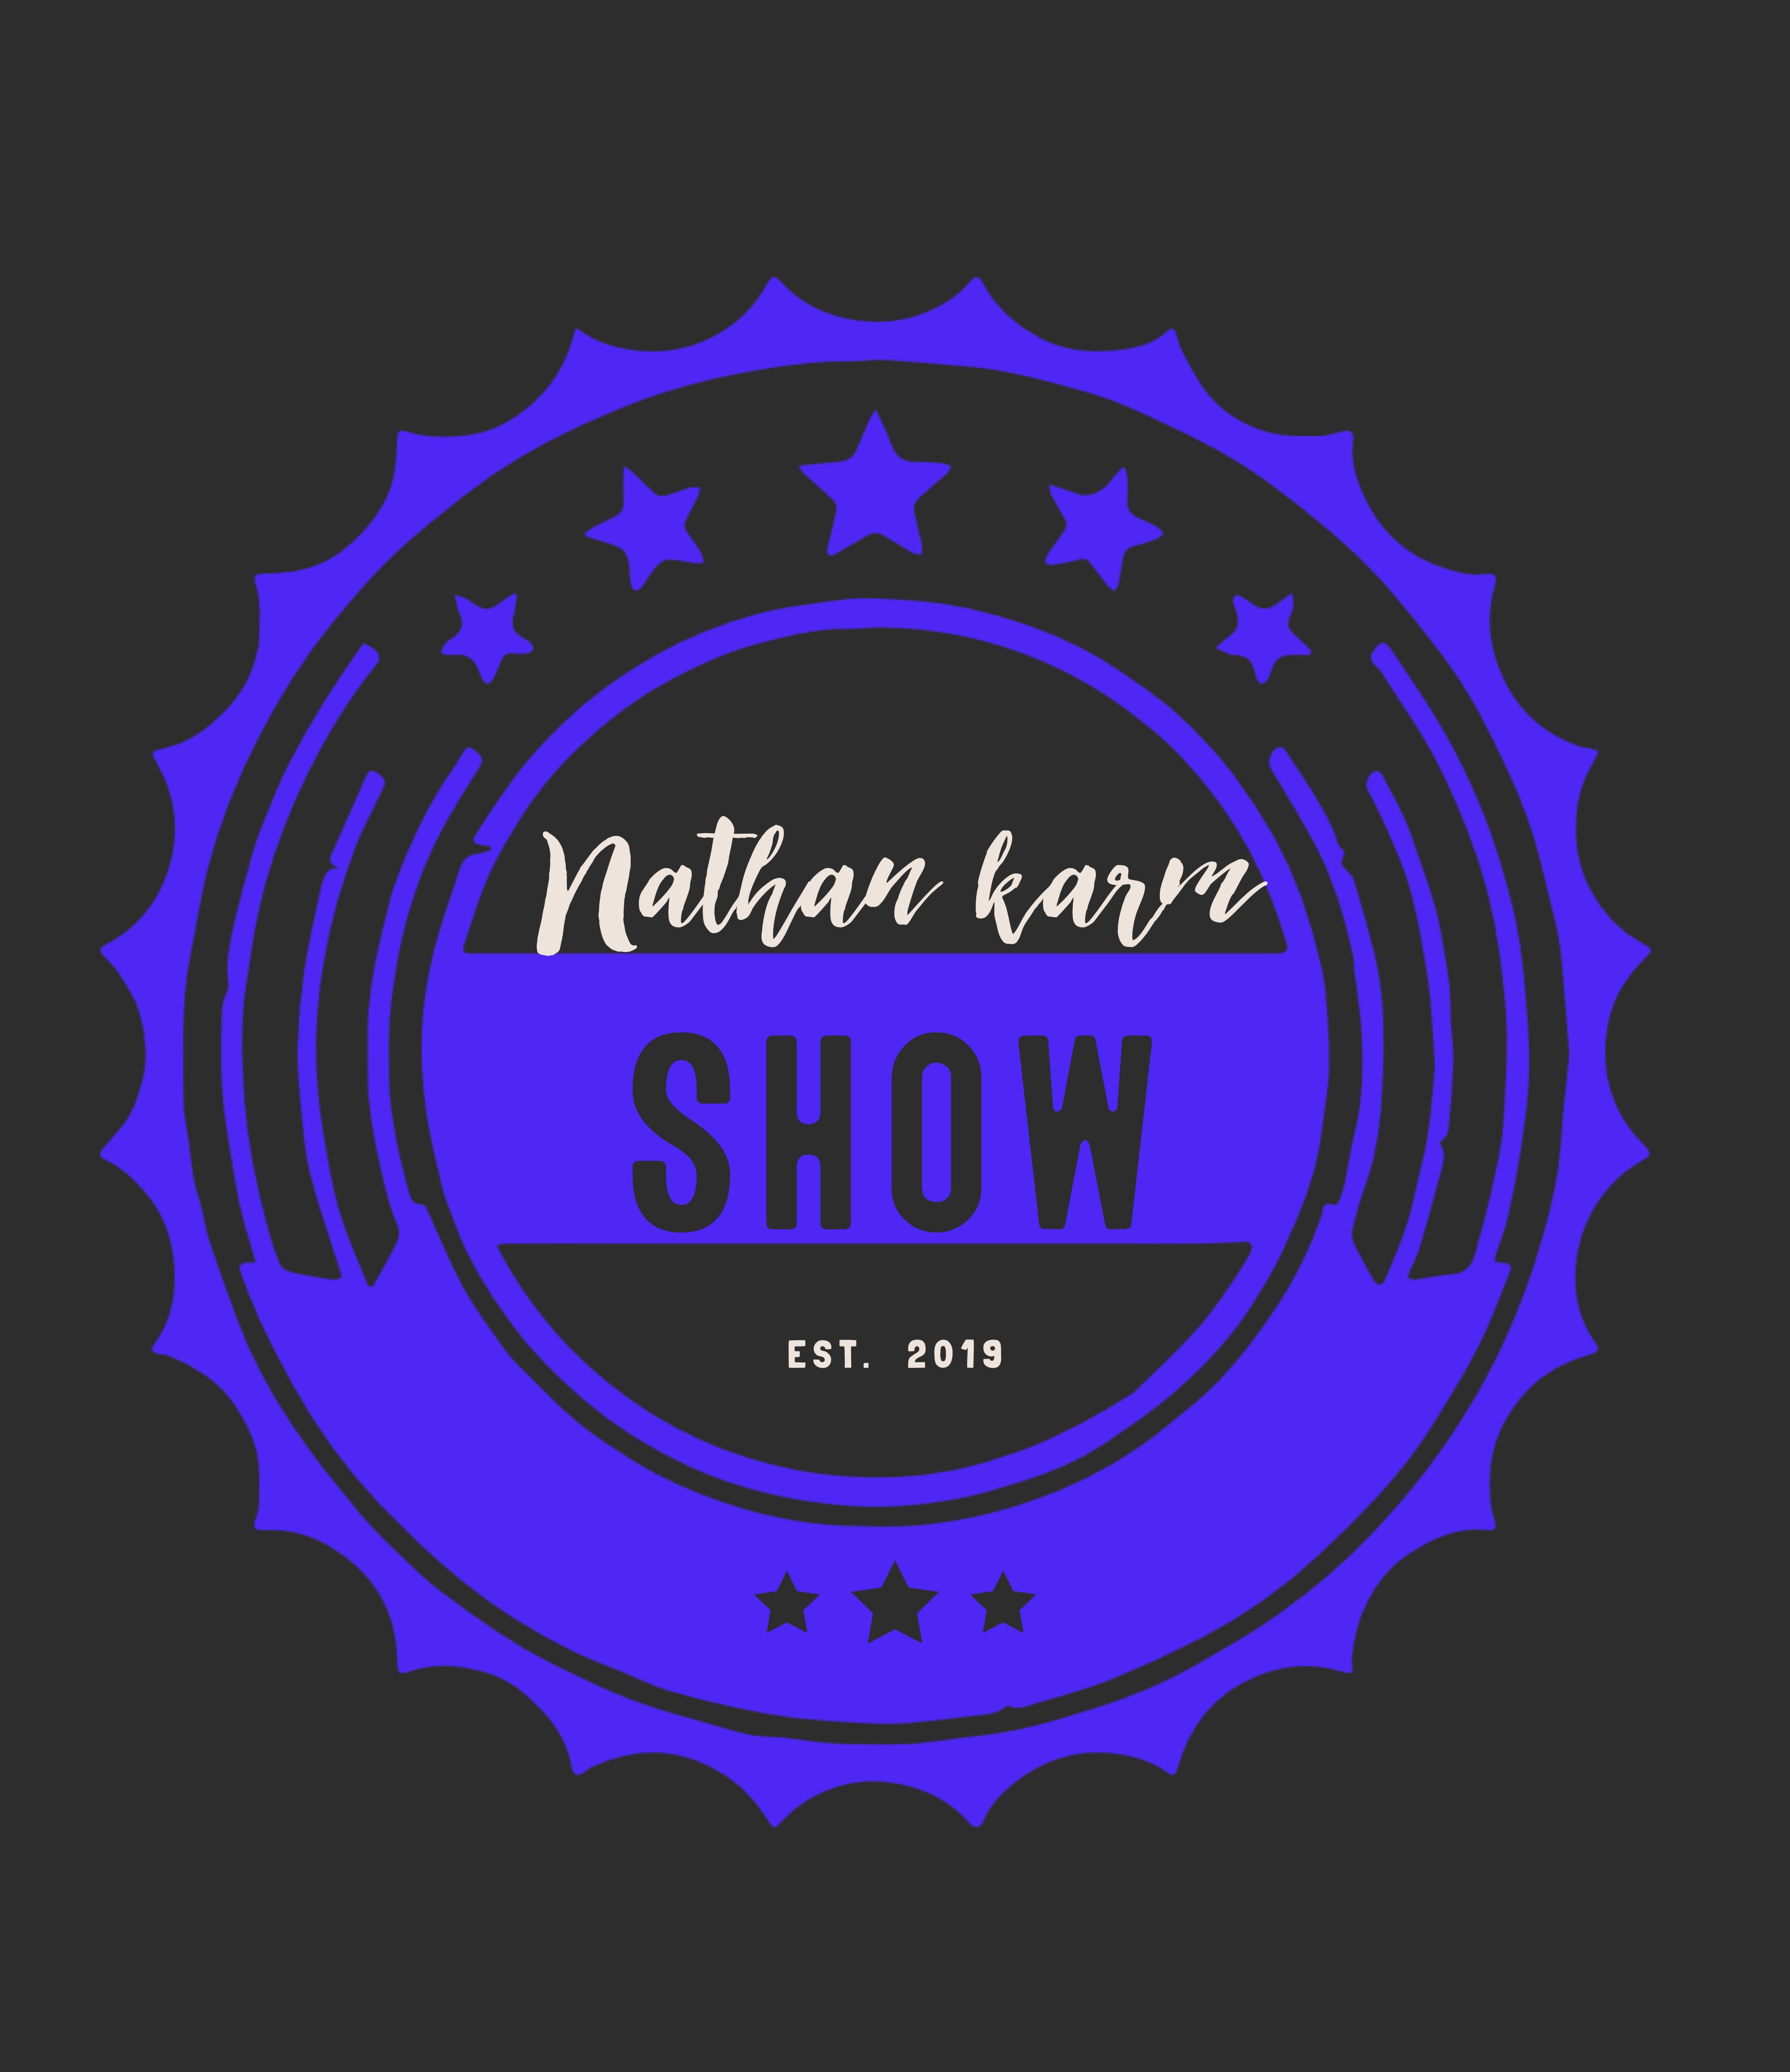 The Nathan Karn Show